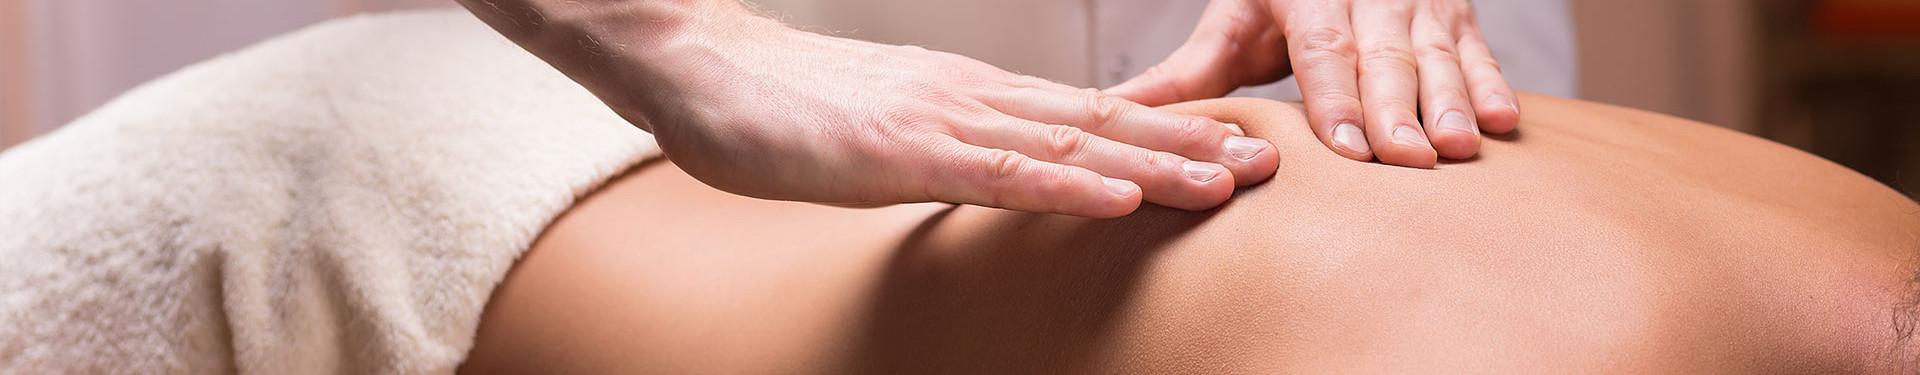 masaże rehabilitacyjne i masaże lecznicze